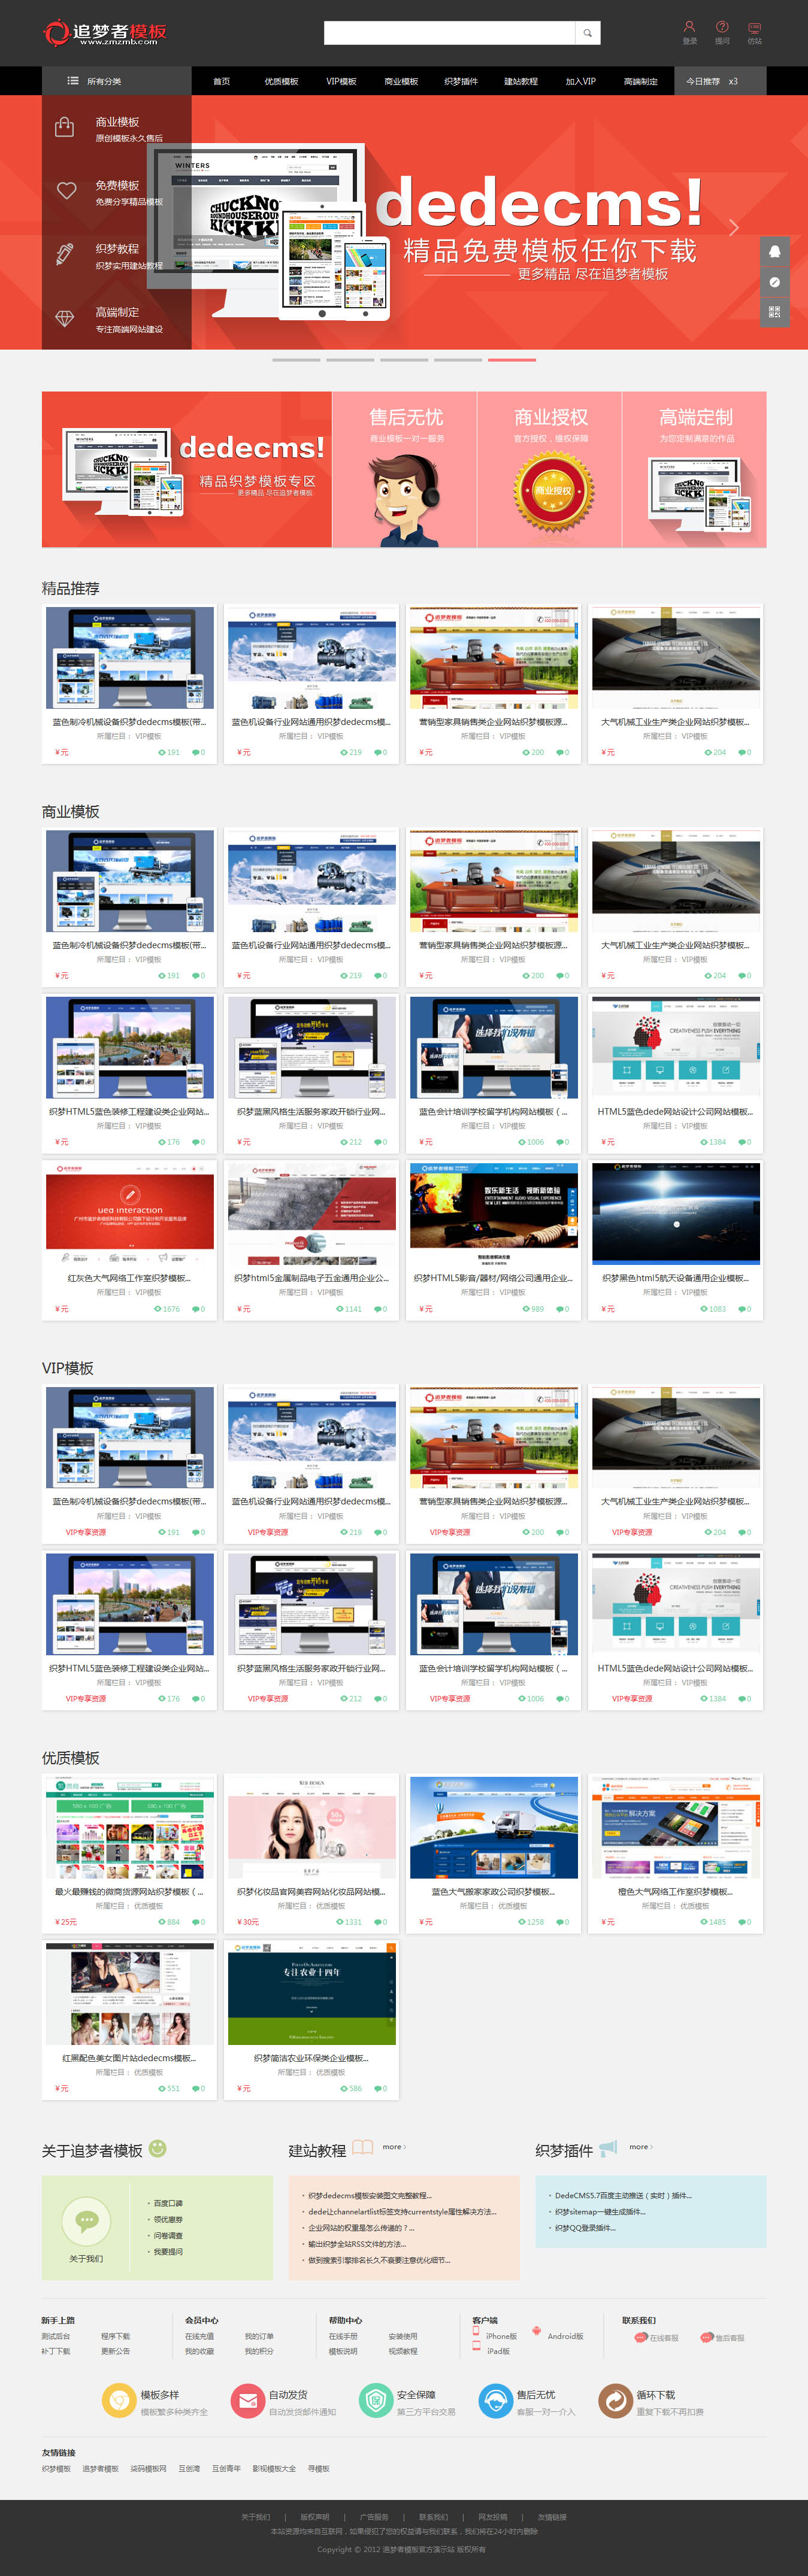 织梦模板站素材站模板下载站网页素材下载平台